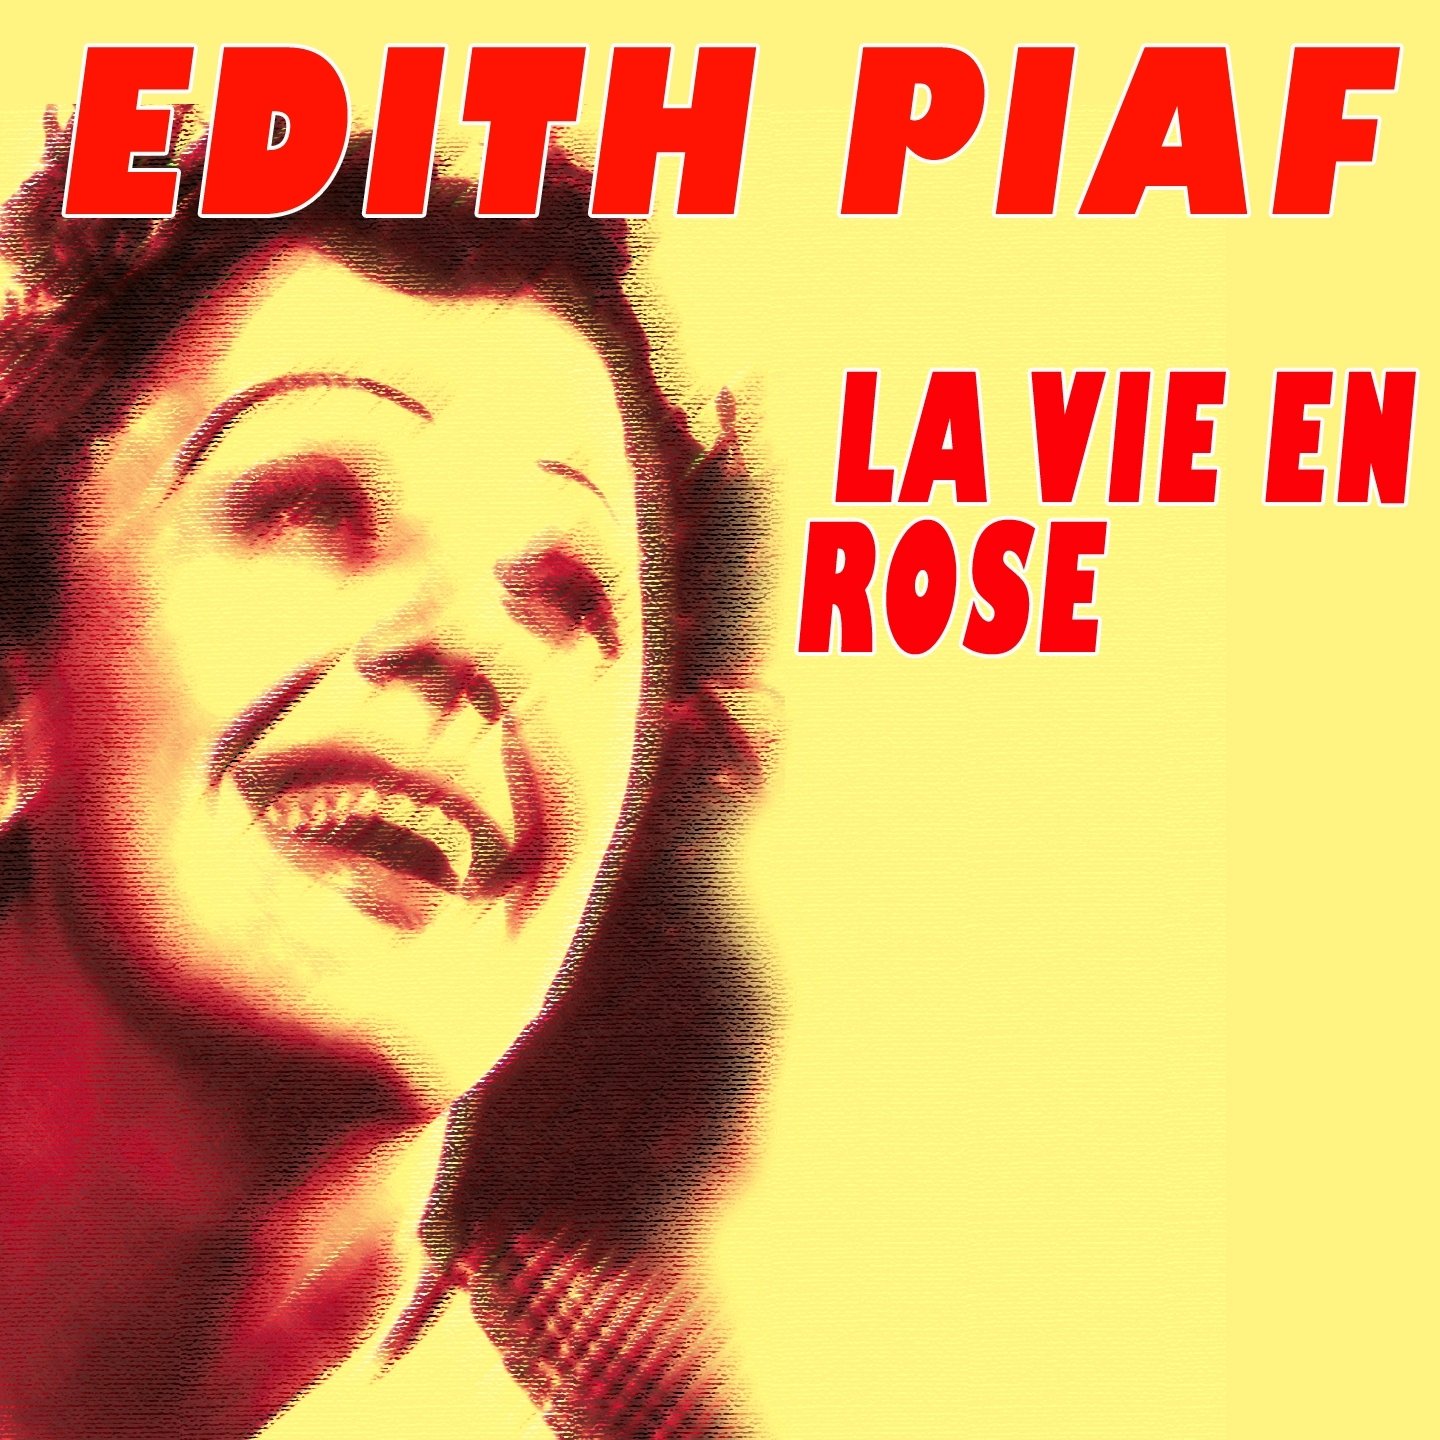 Эдит Пиаф. Эдит Пиаф жизнь в розовом цвете. La vie en Rose Эдит Пиаф. Эдит Пиаф маленькая.